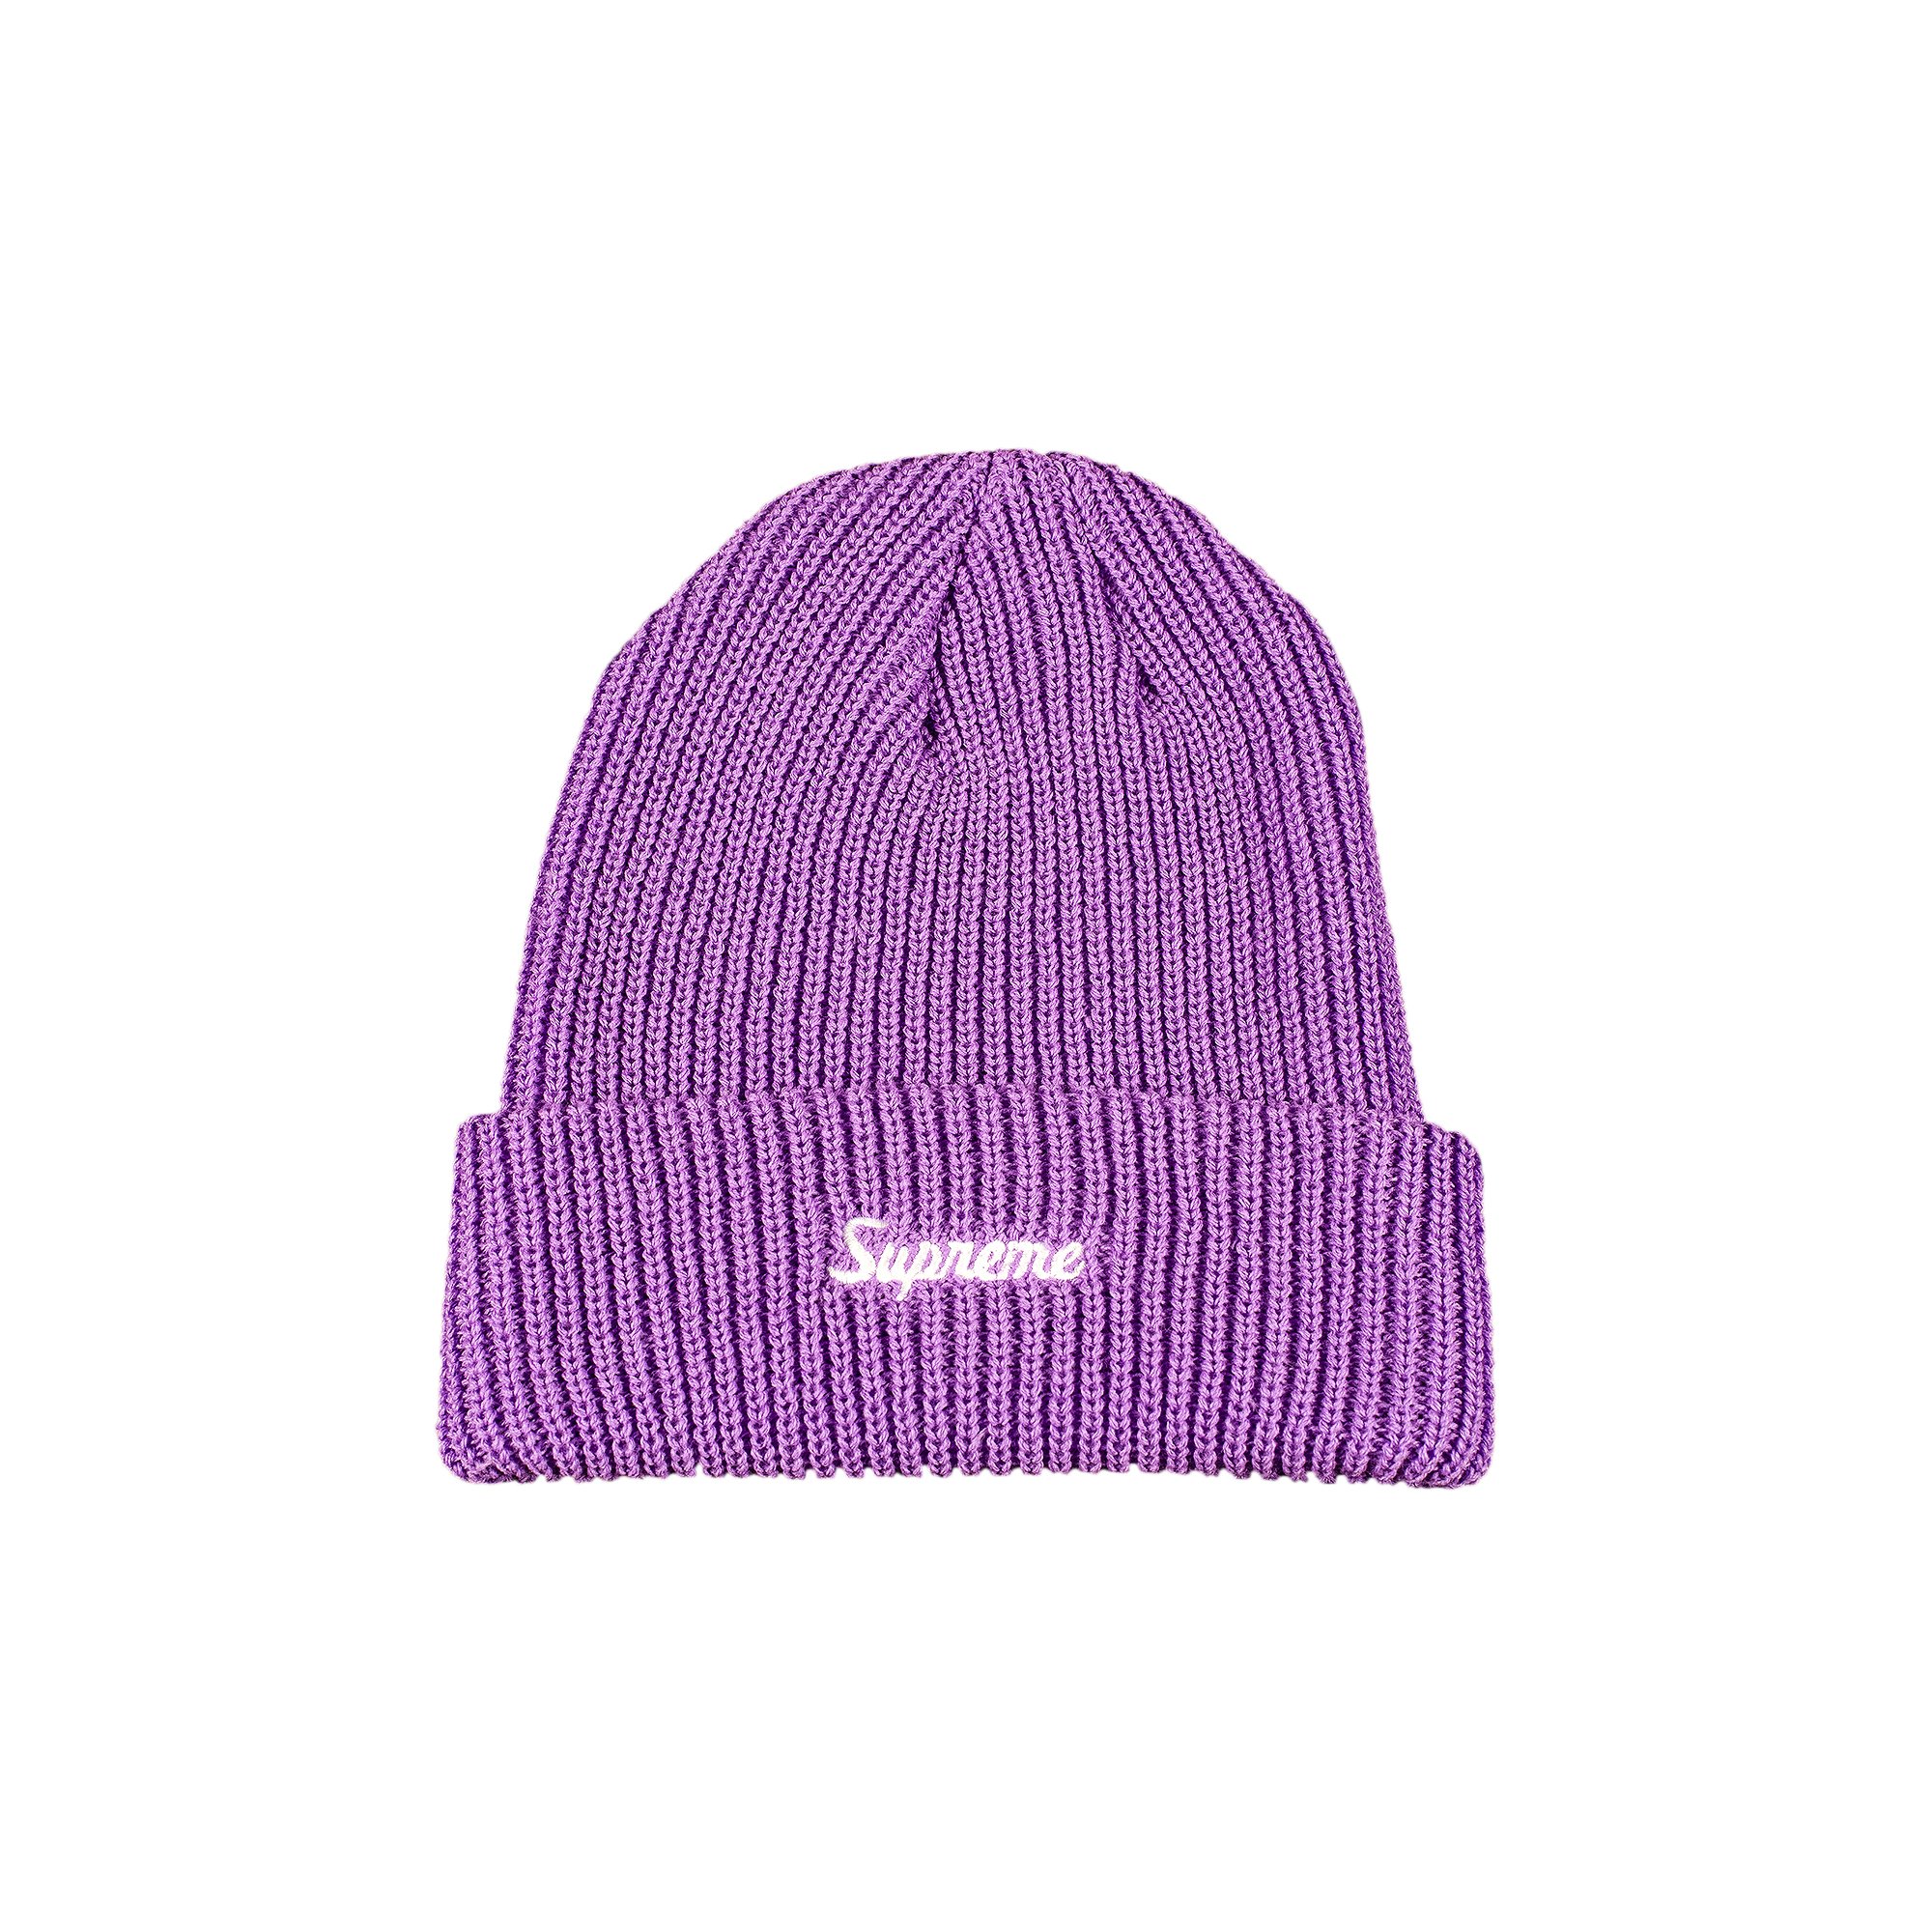 ニット帽/ビーニーSupreme Loose Gauge Beanie Bright Purple